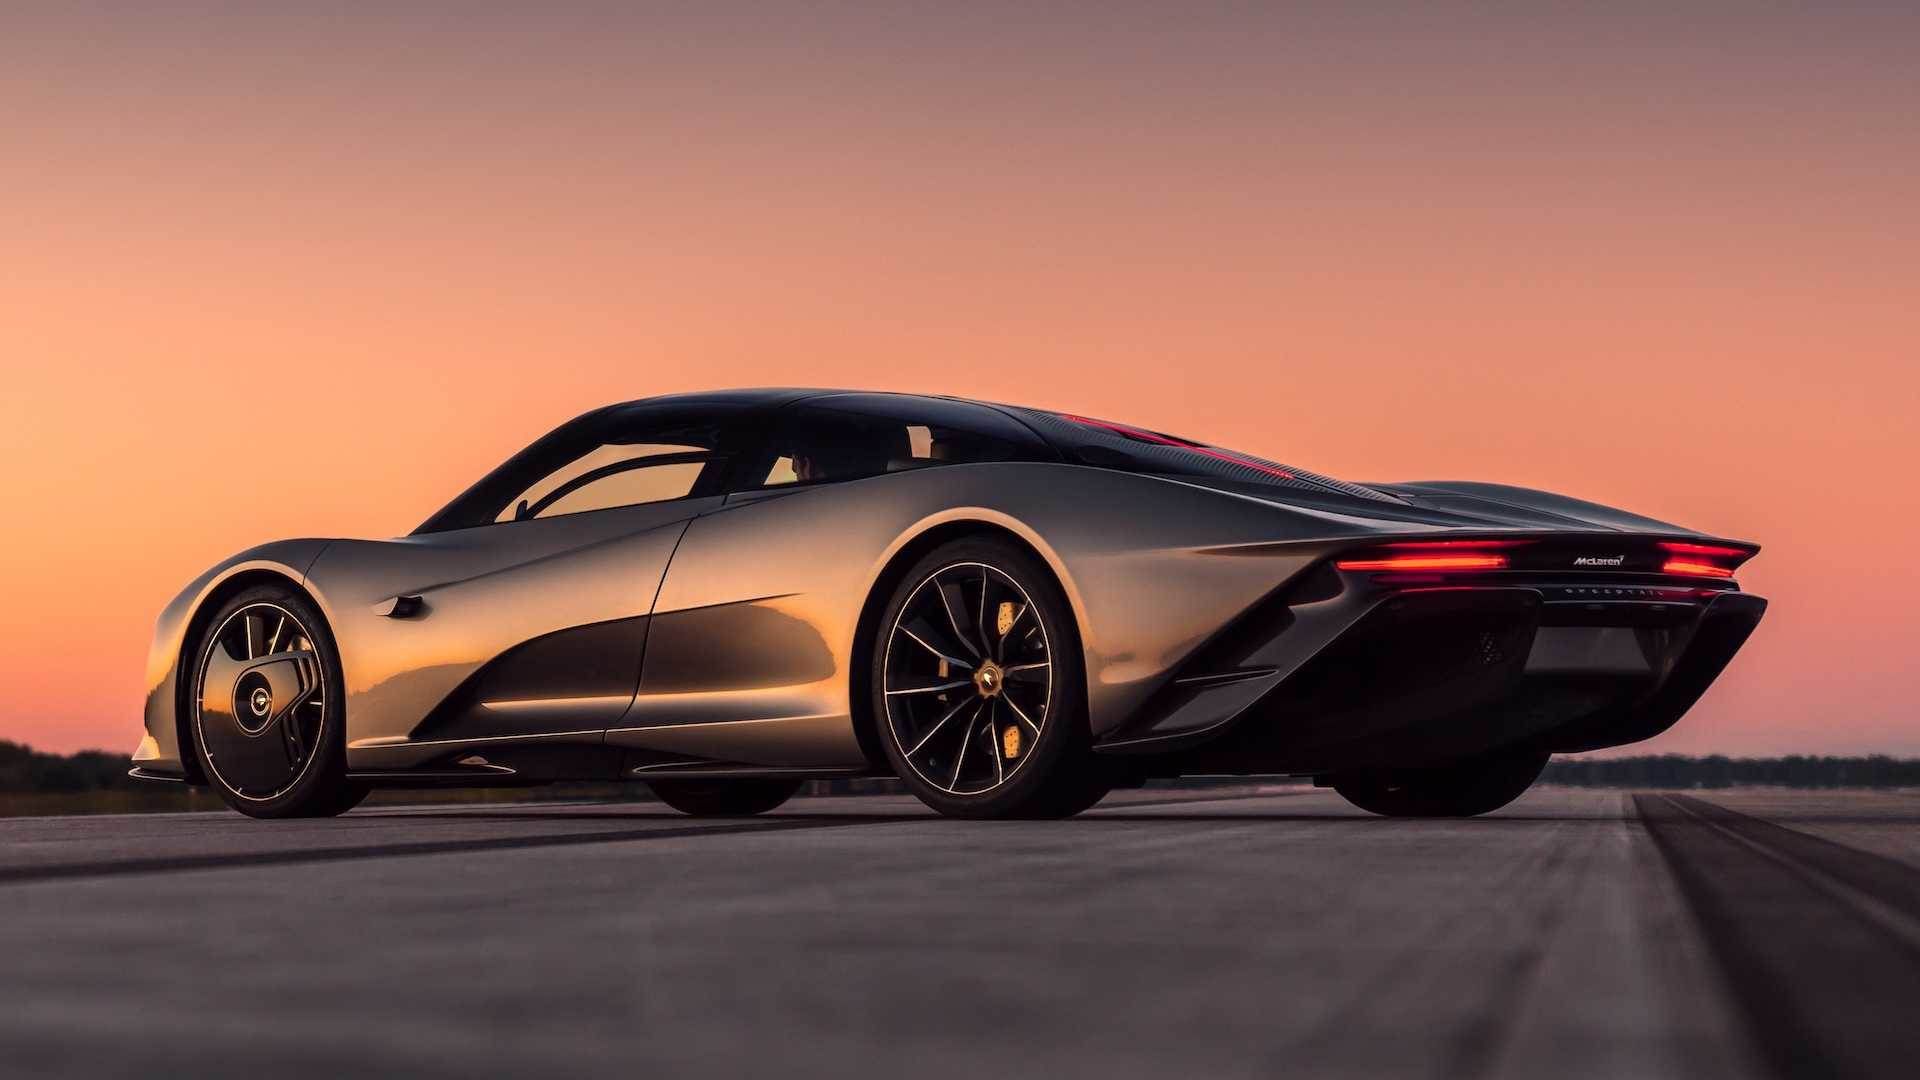 McLaren Speedtail / مک لارن اسپیدتیل